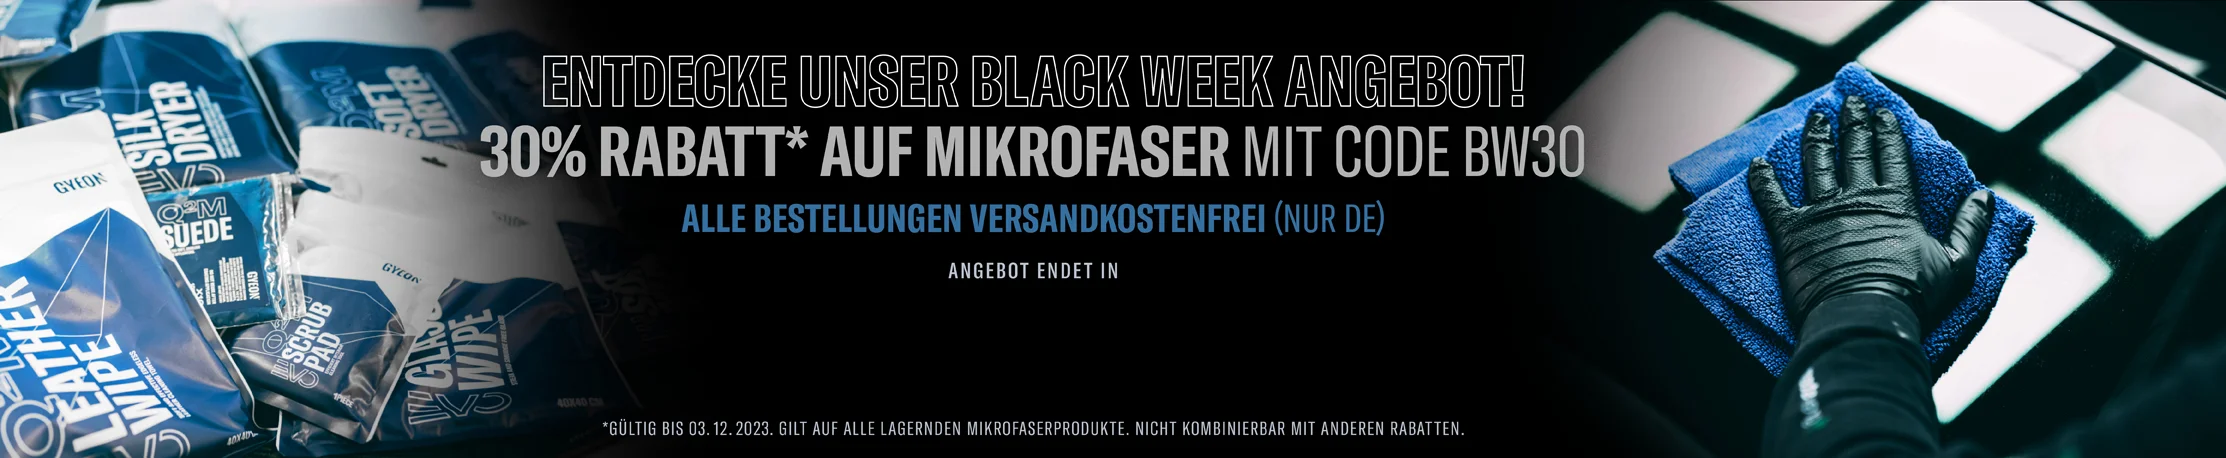 Black Week bei gyeon.de – versandkostenfrei & 30% auf...